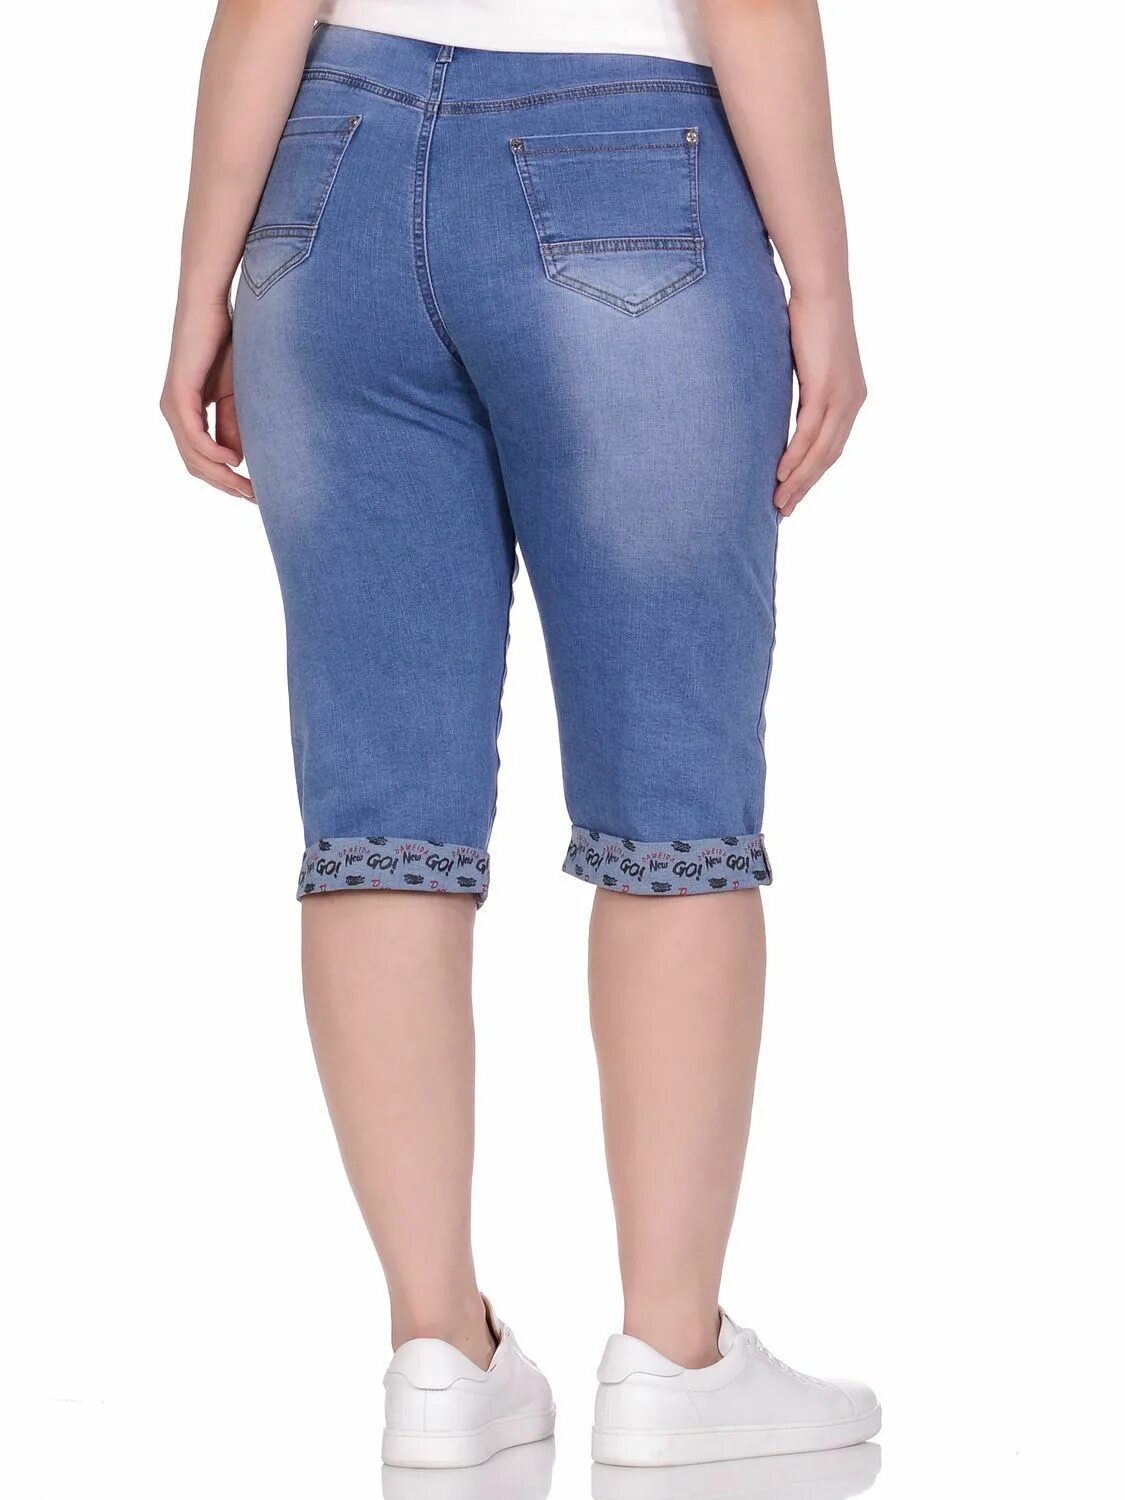 Озон женские джинсы на резинке. Gloria Jeans бриджи женские джинсовые стретч. Модные джинсовые бриджи. Бриджи с завышенной талией. Бриджи джинсовые женские стрейч.